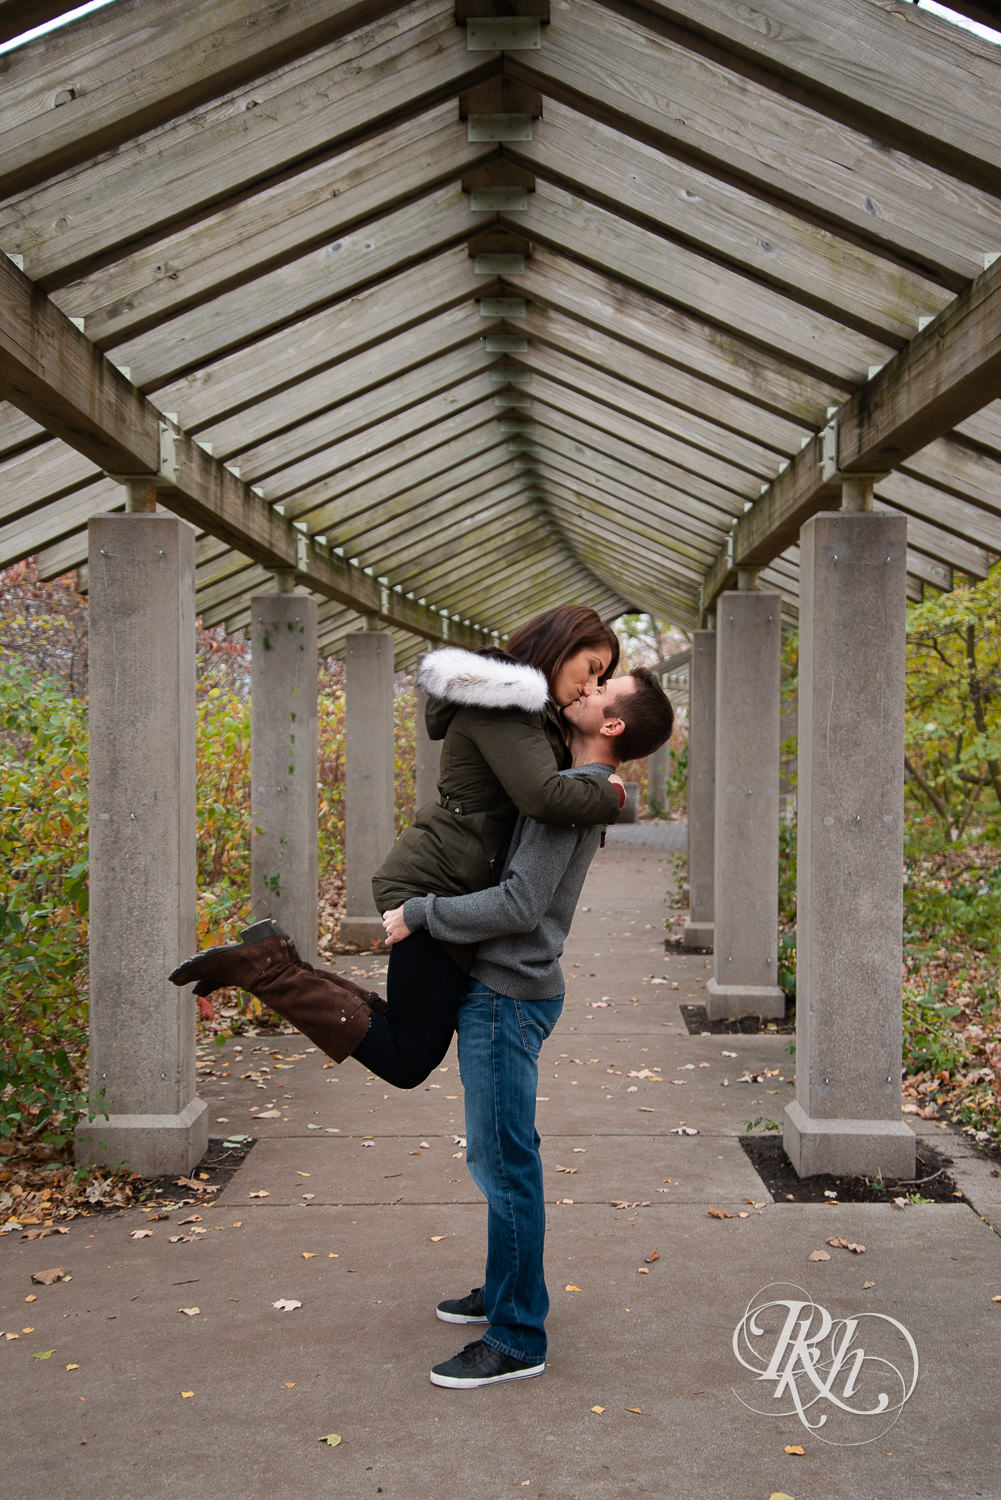 Man lifts and kisses woman in Minnehaha Falls in Minneapolis, Minnesota.